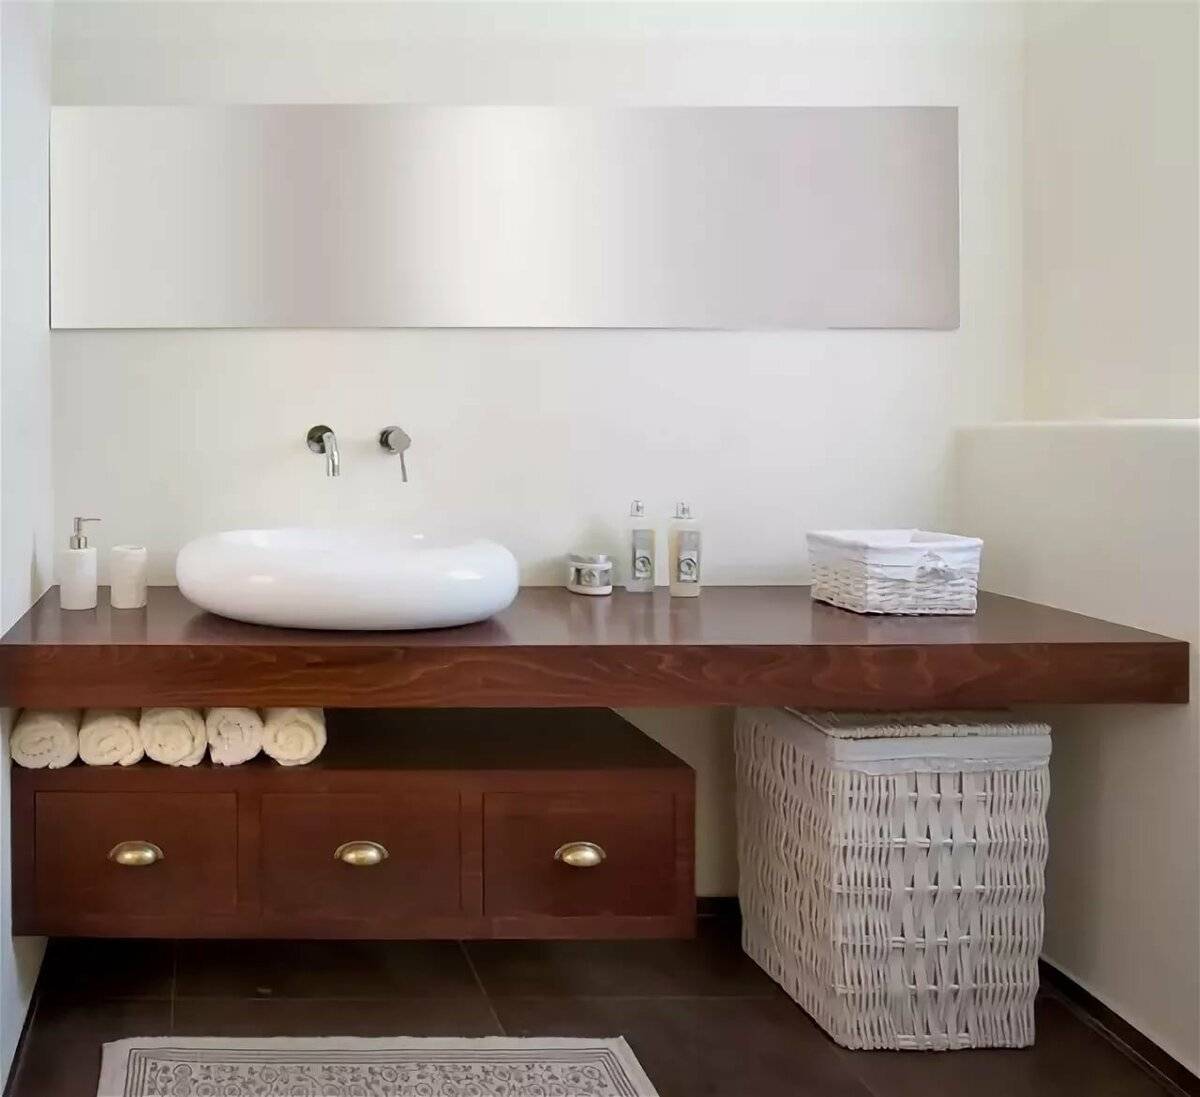 Столешница в ванную под раковину: выбор и самостоятельное изготовление - блог ремстрой-про